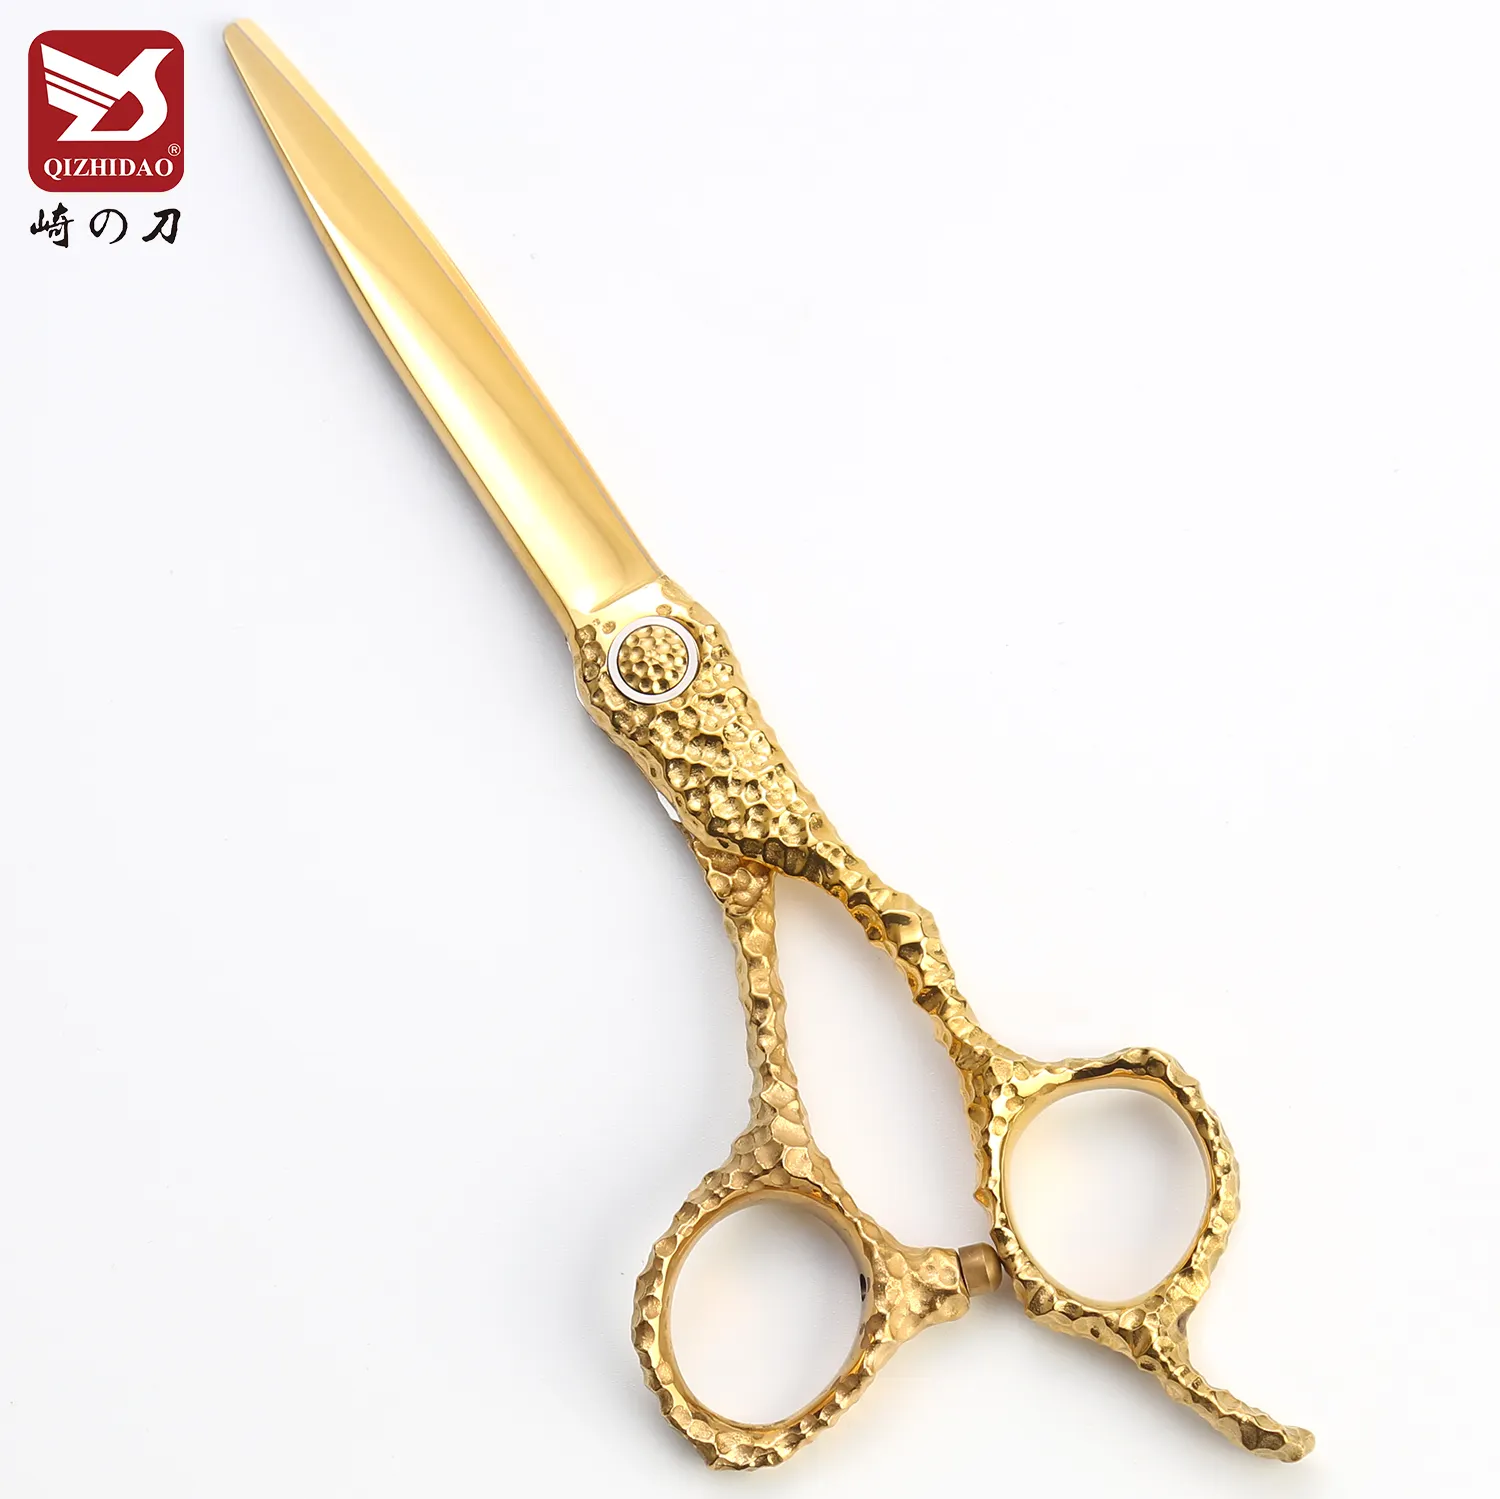 Cnc mizutani tesoura de cabeleireiro, tesoura premium japonesa vg10 cobalto dourado para salão de beleza profissional